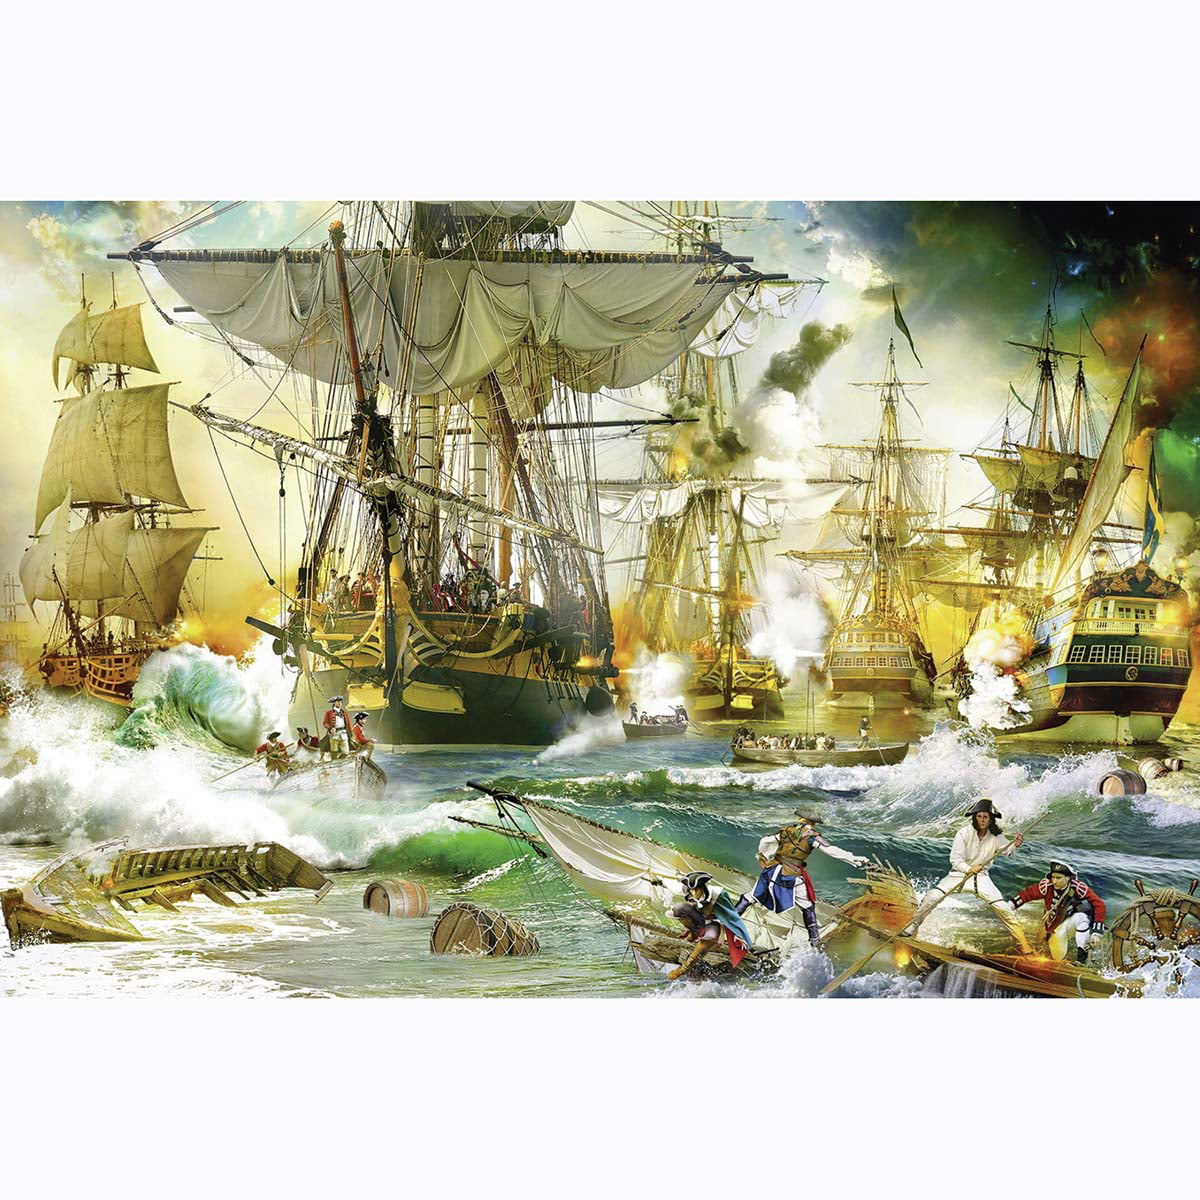 Puzzle Clementoni 6000 Teile Piratenschlacht 169 x 119 cm  Pirates battle 